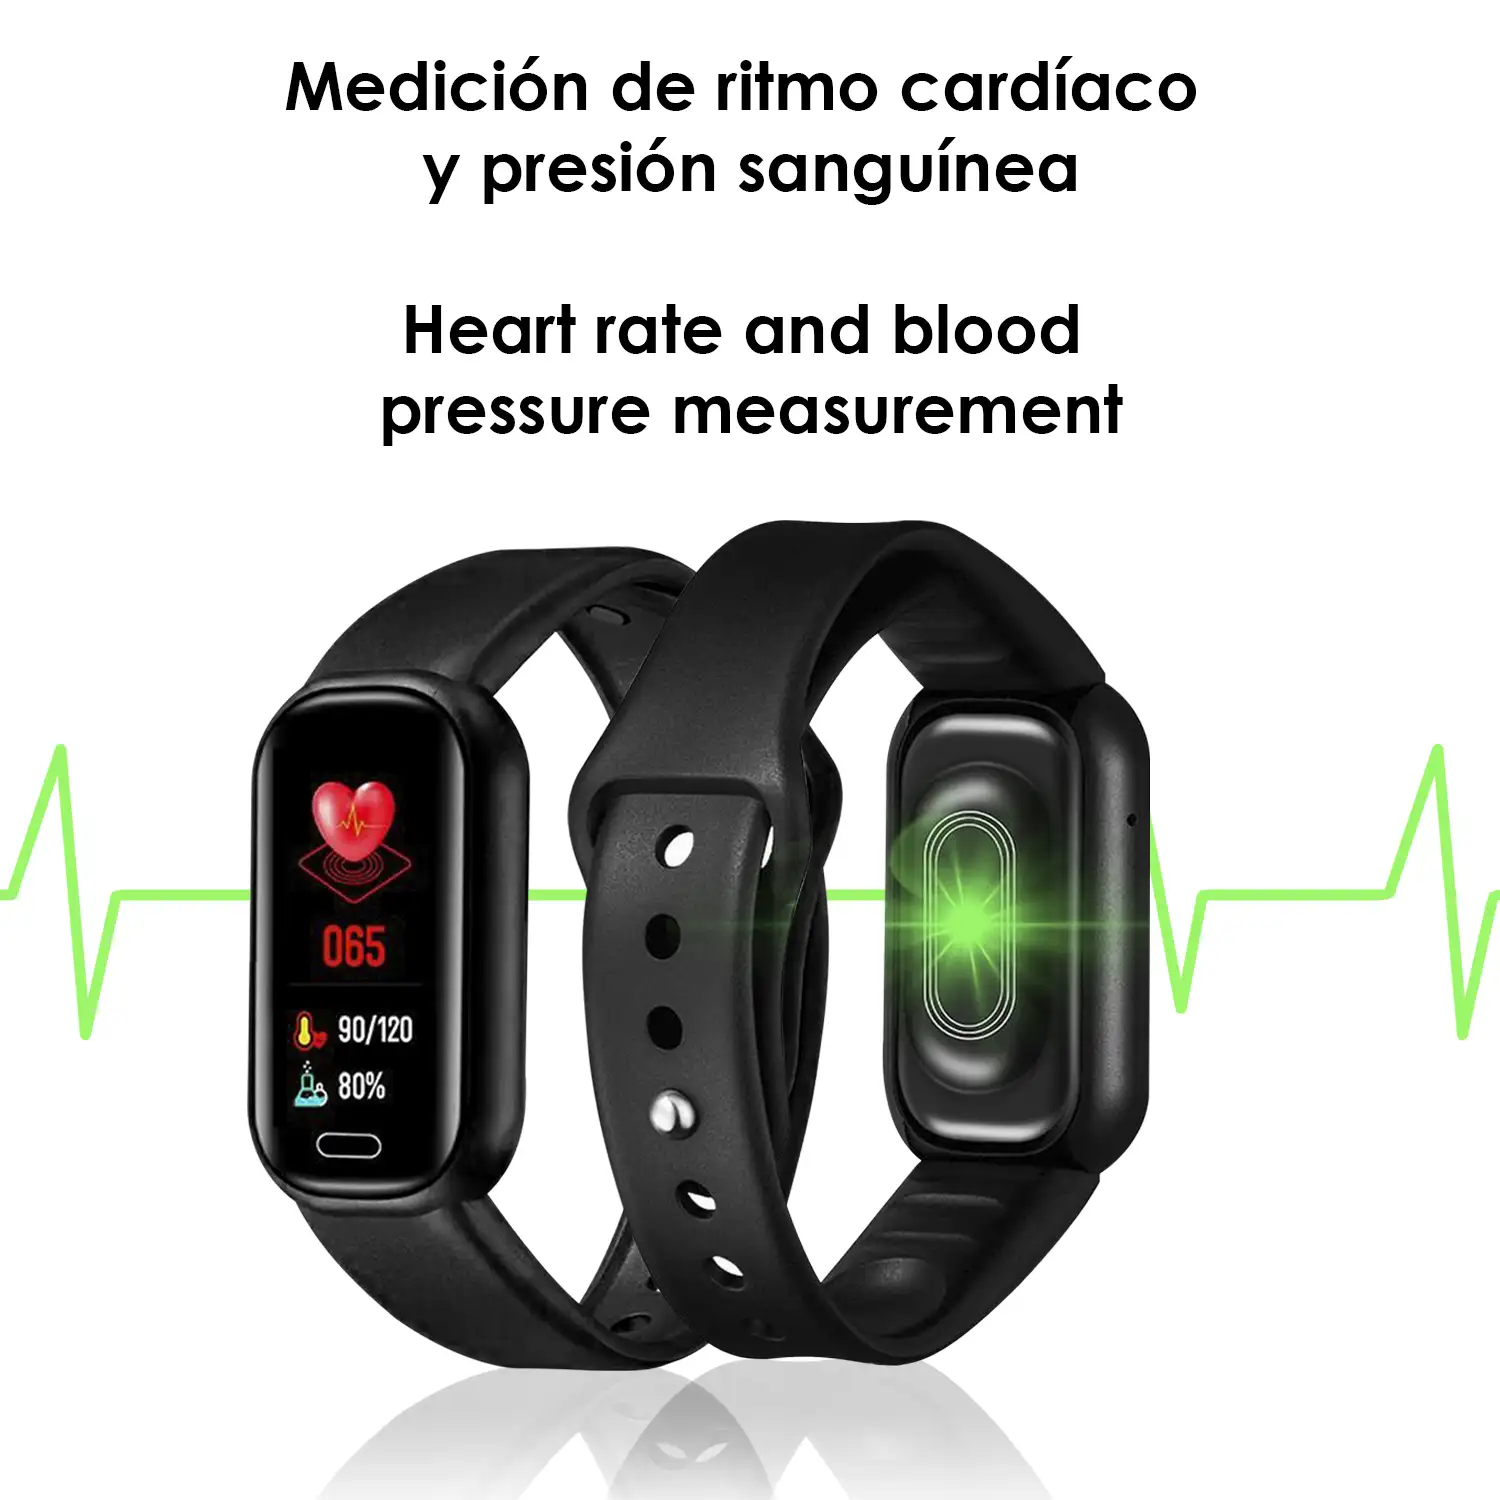 Brazalete inteligente Y16 con monitor cardiaco, presión sanguínea y notificaciones.